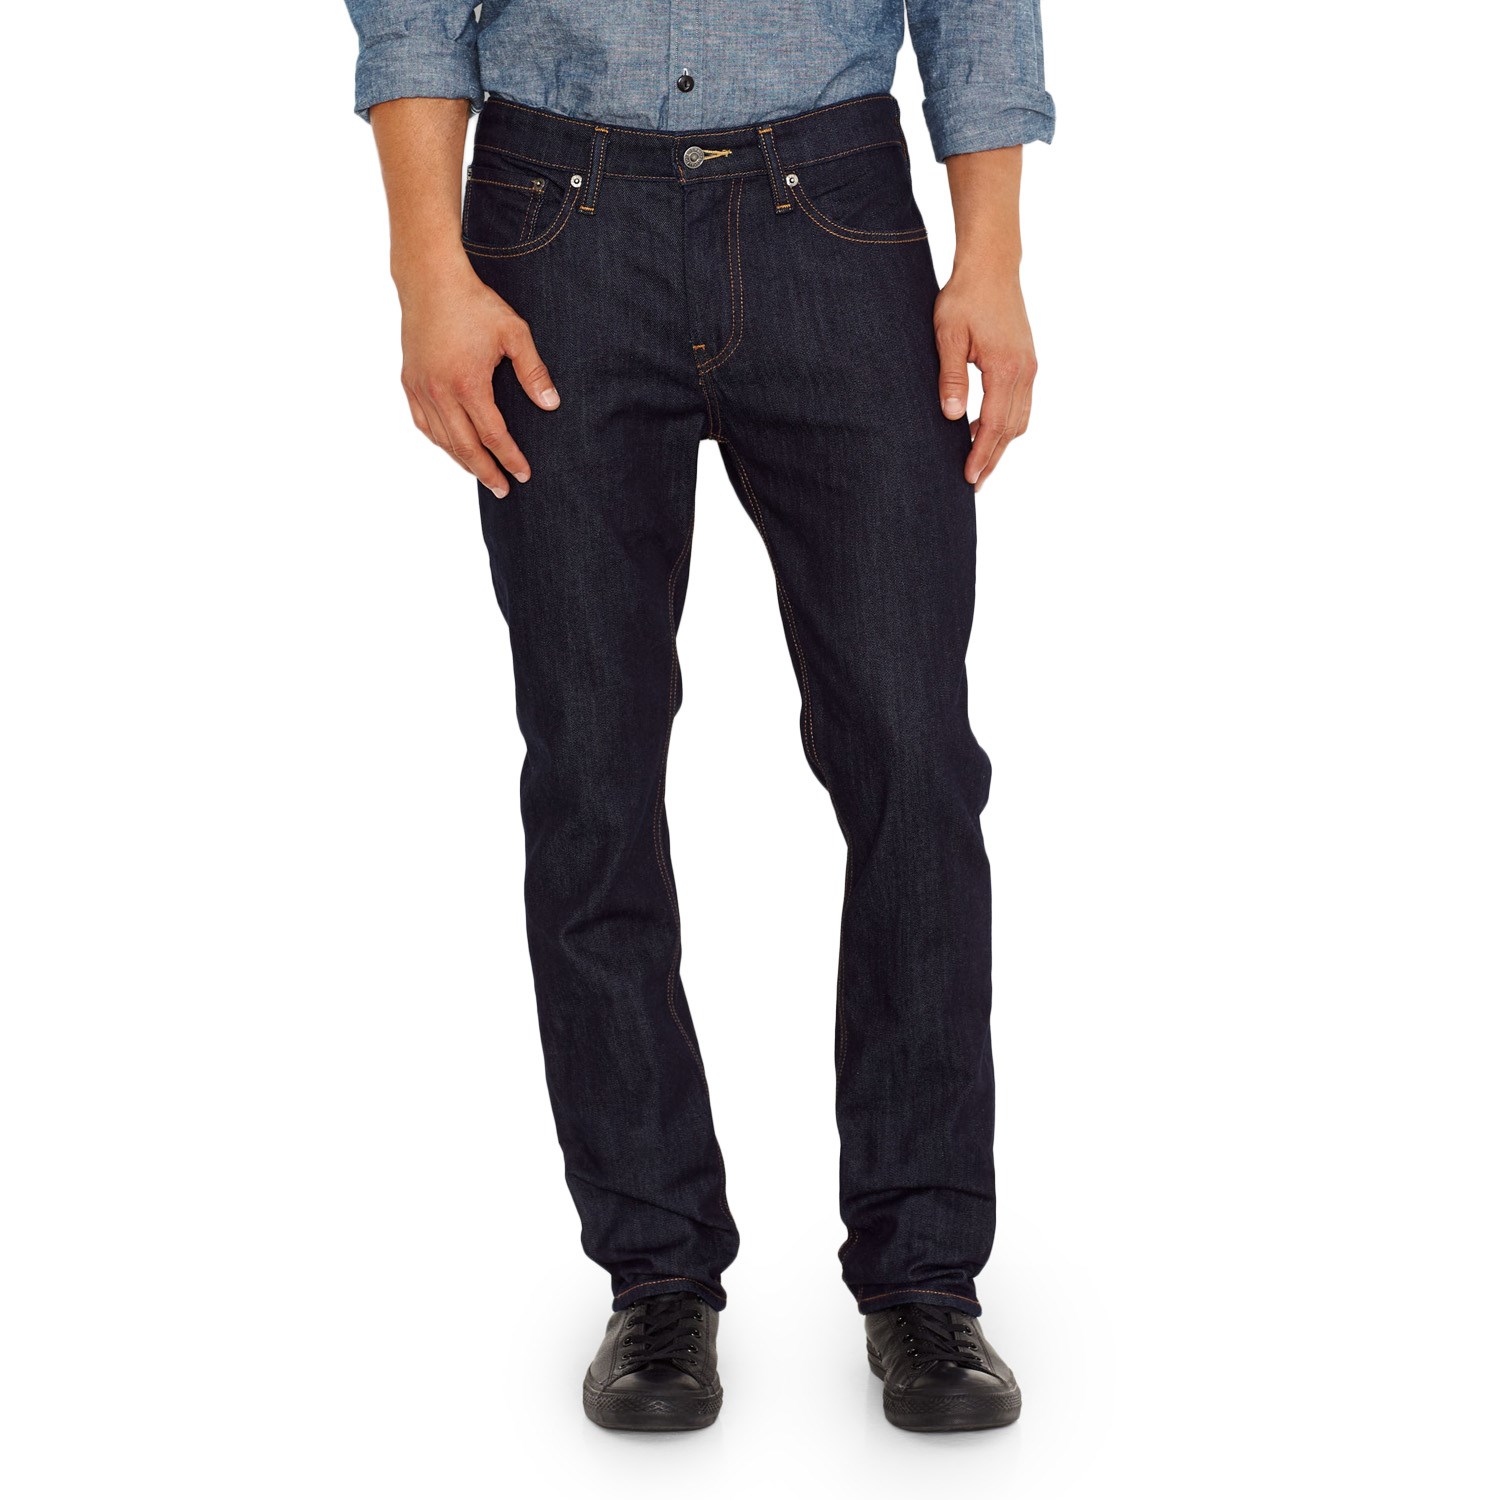 Levi's Commuter 511™ Slim Fit Jeans